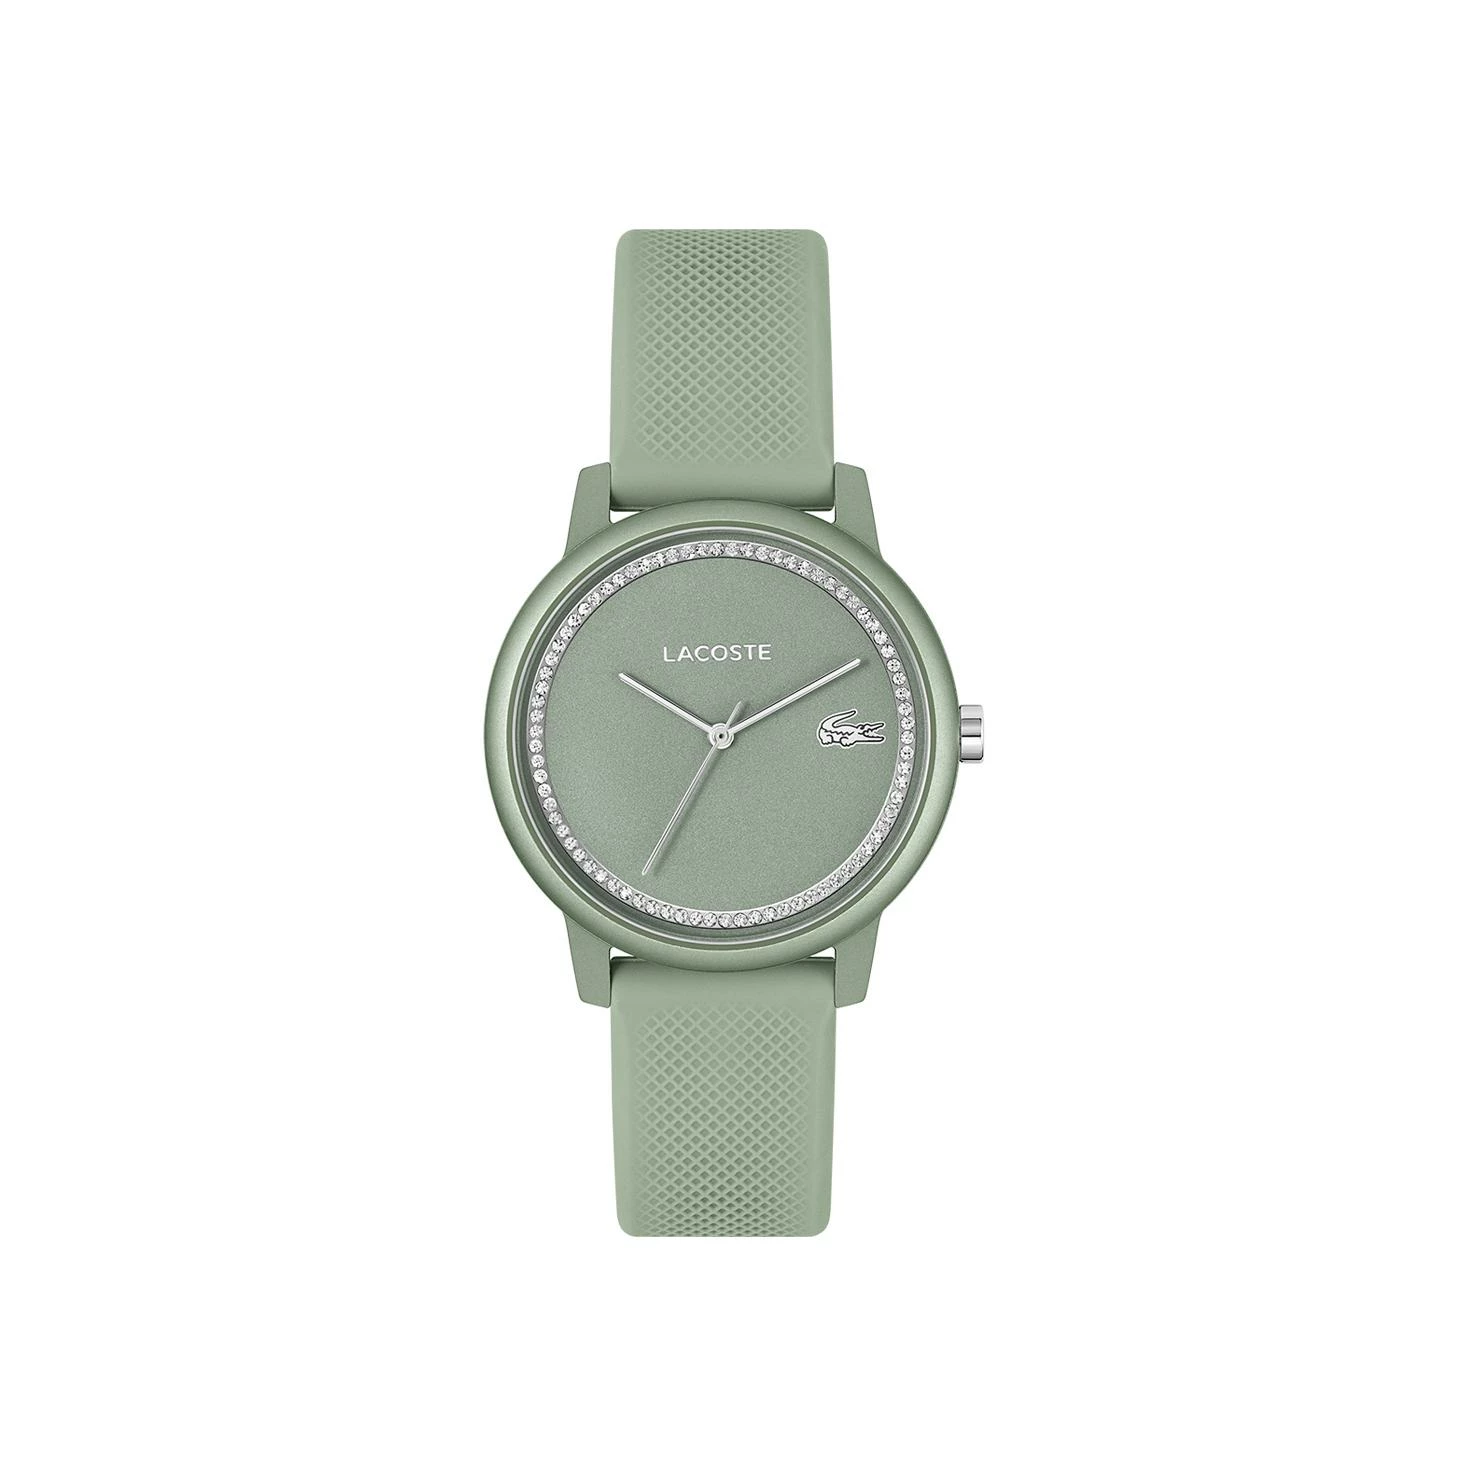 Montre Femme Lacoste 12.12 Go avec bracelet silicone vert d\'eau